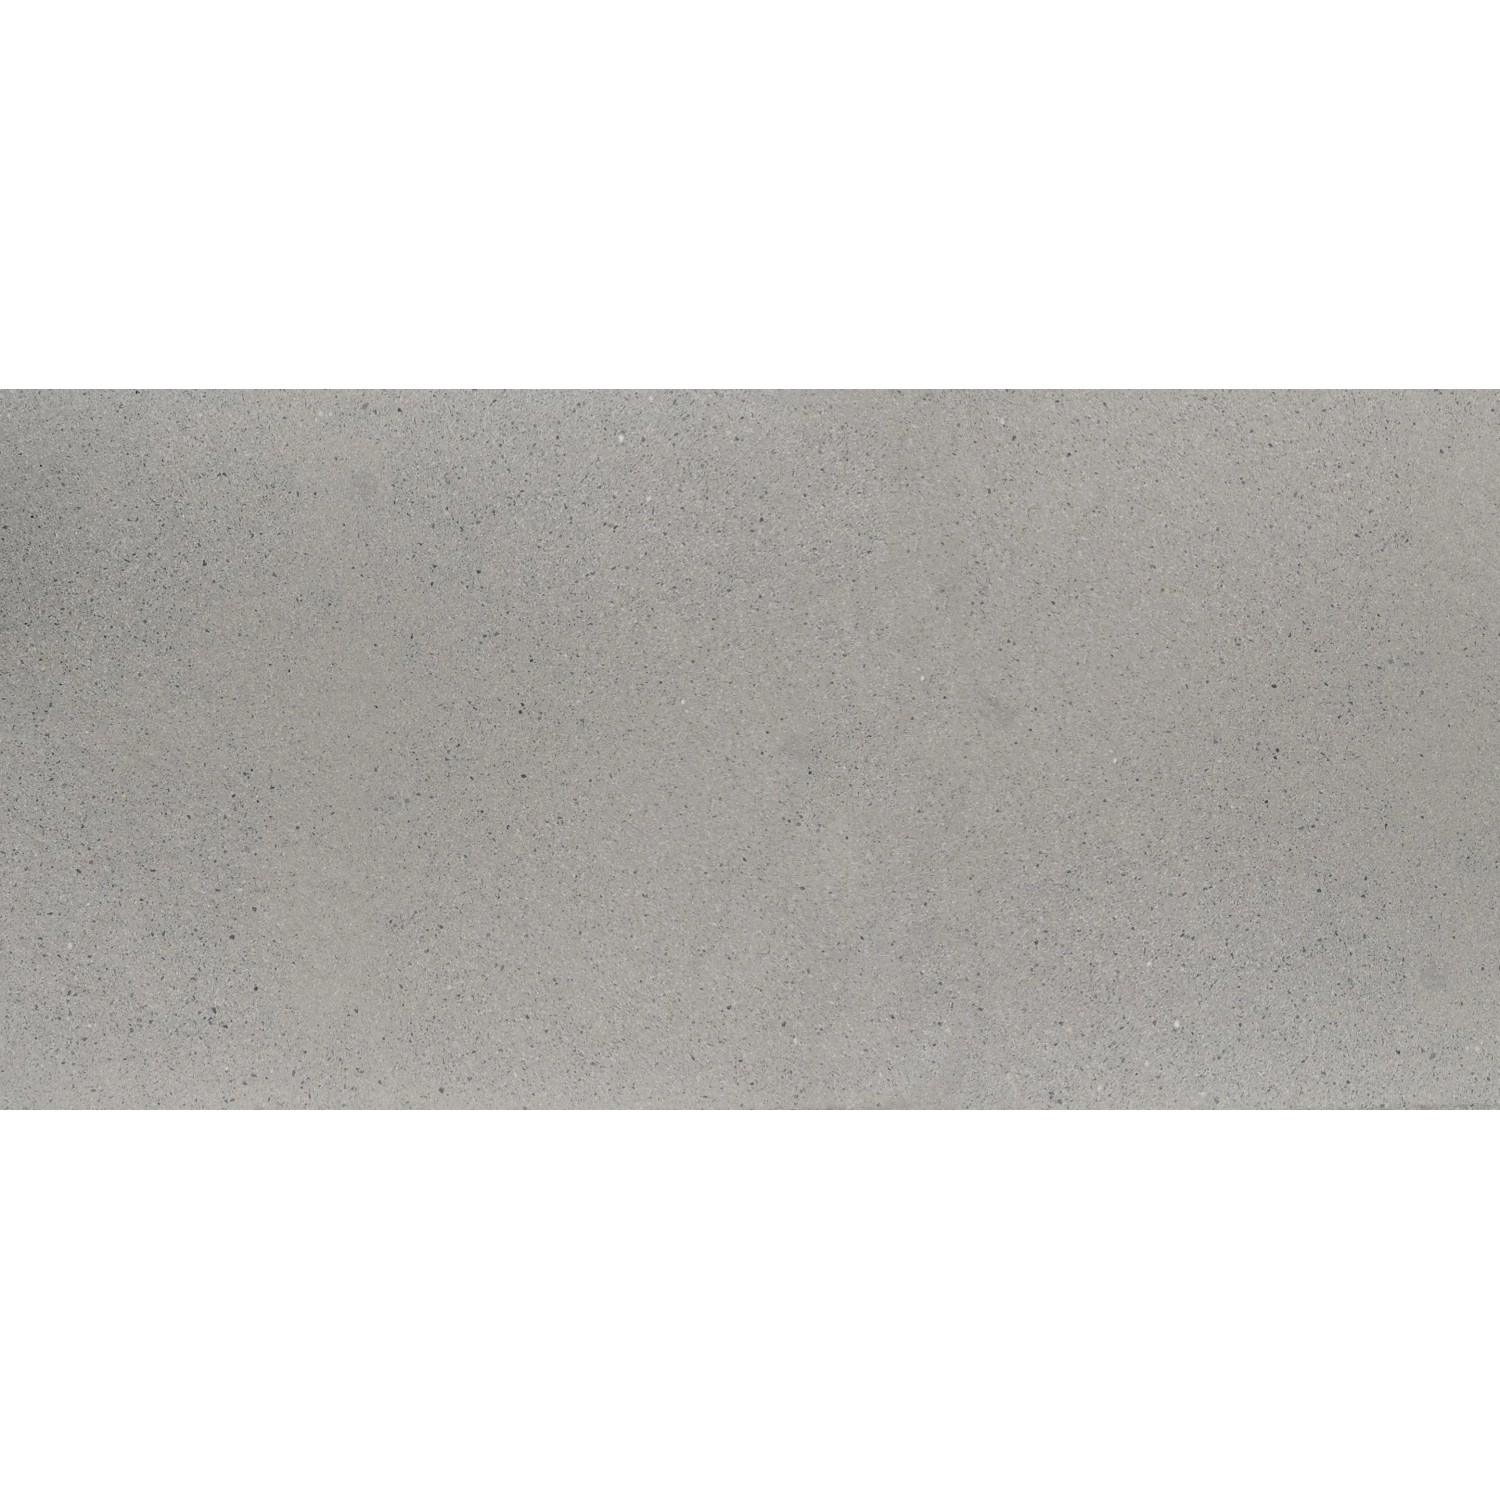 Diephaus Terrassenplatte Finessa Grau-Weiß 80 cm x 40 cm x 4 cm